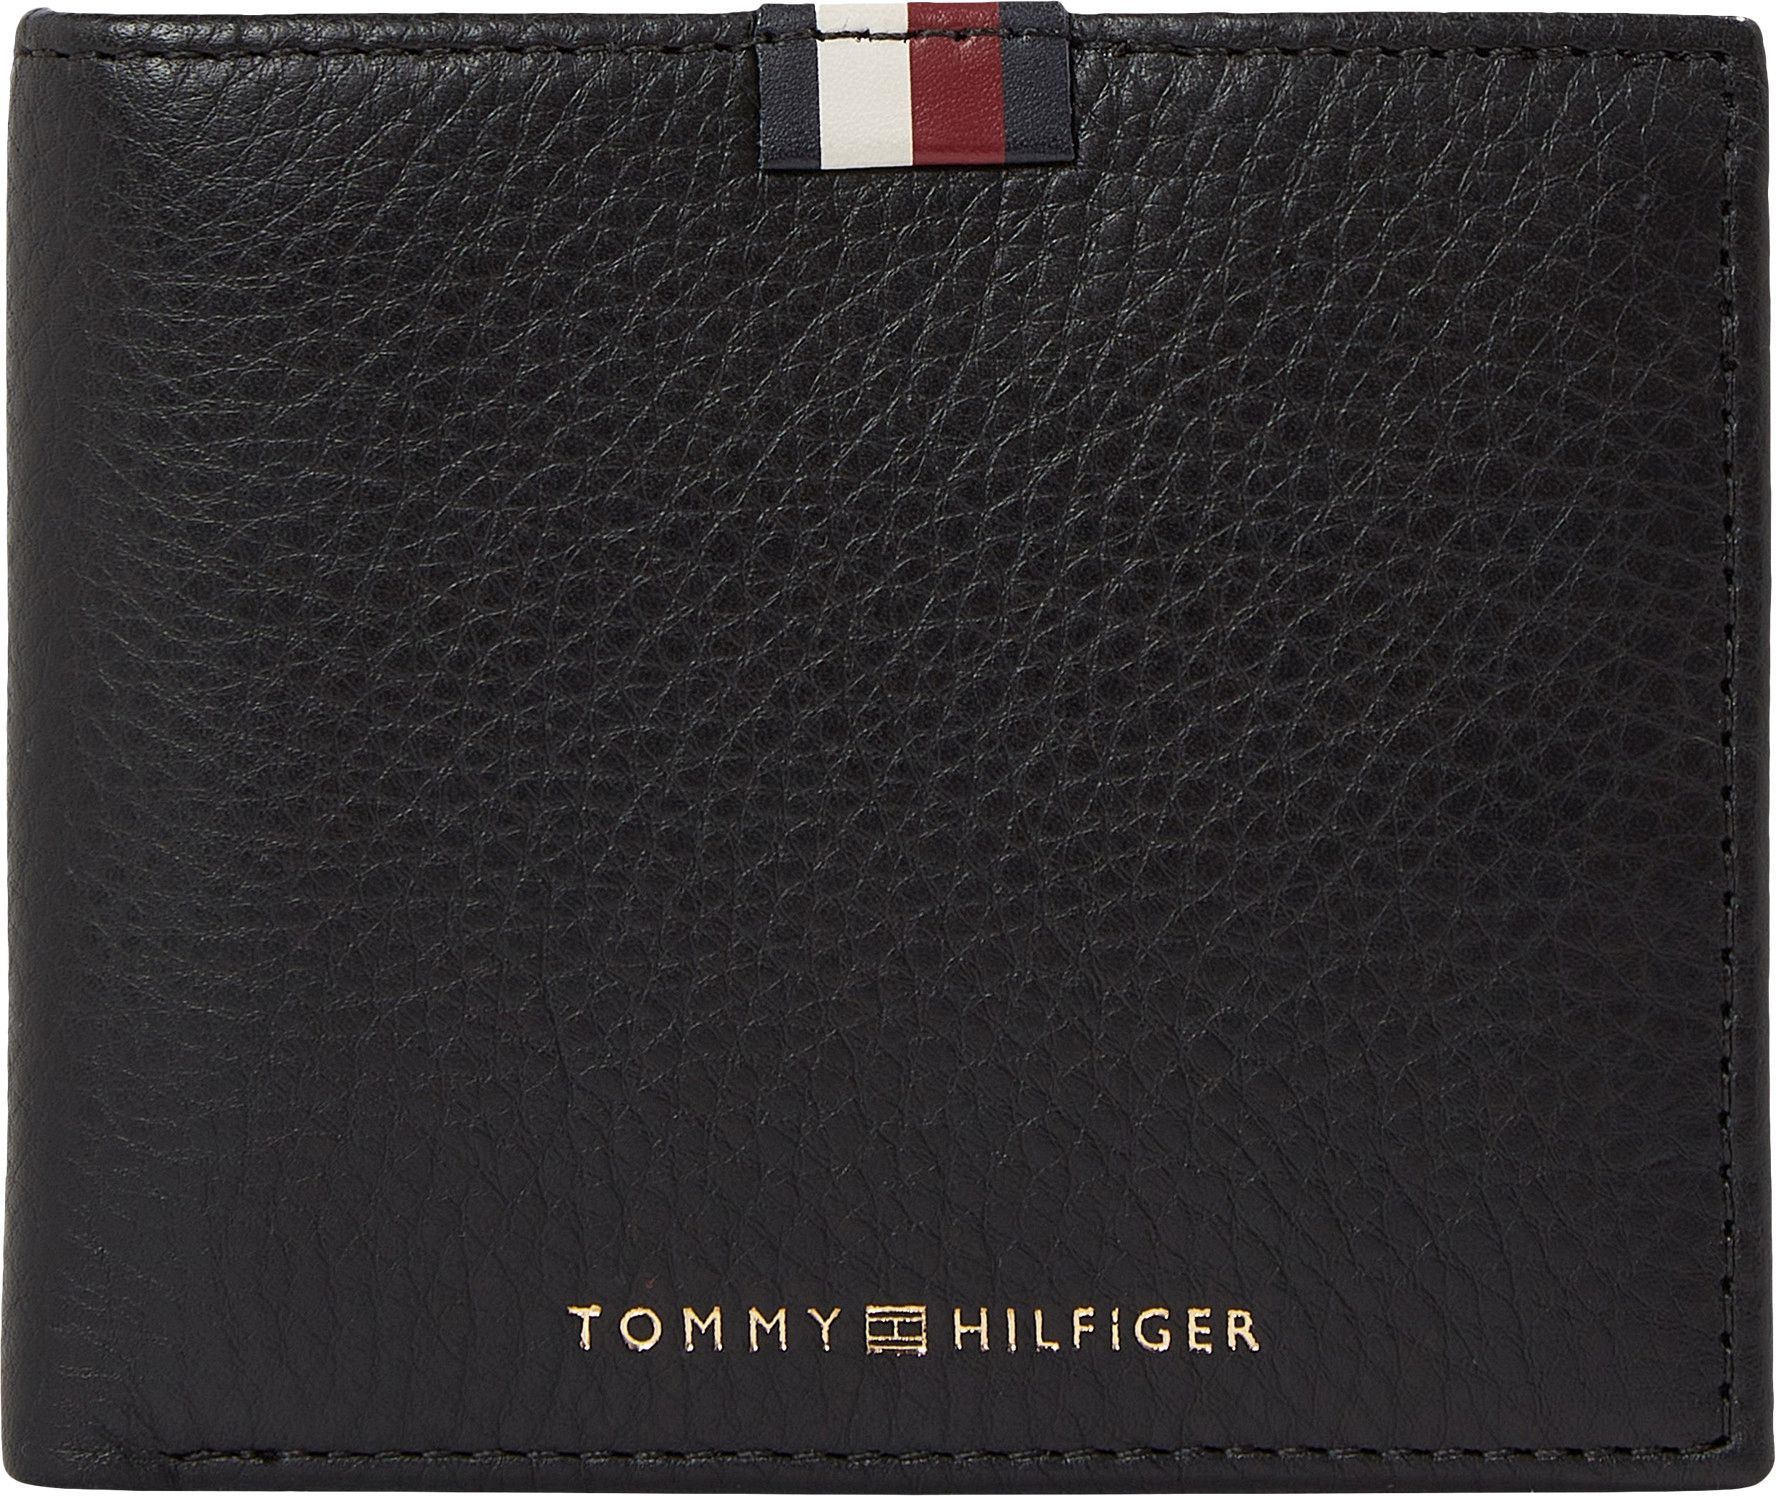 CC Lederbörse Premium Tommy Black Flap Leather and Hilfiger Coin